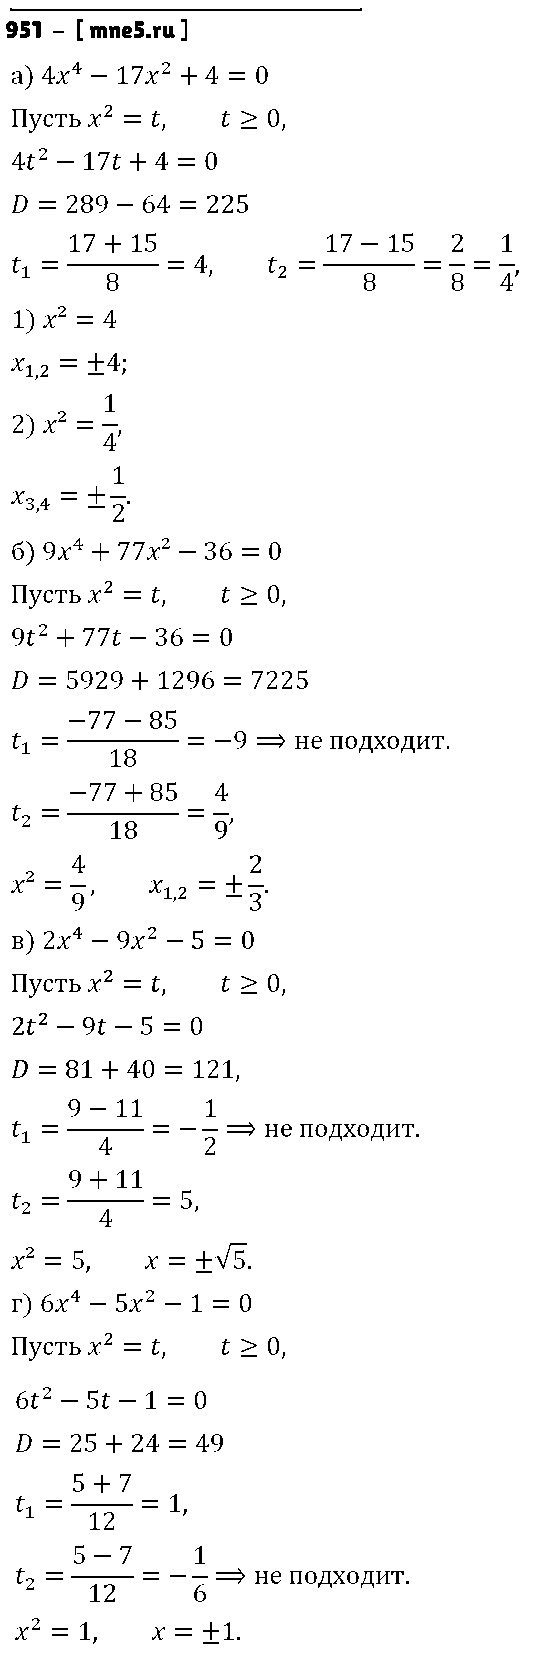 ГДЗ Алгебра 9 класс - 951